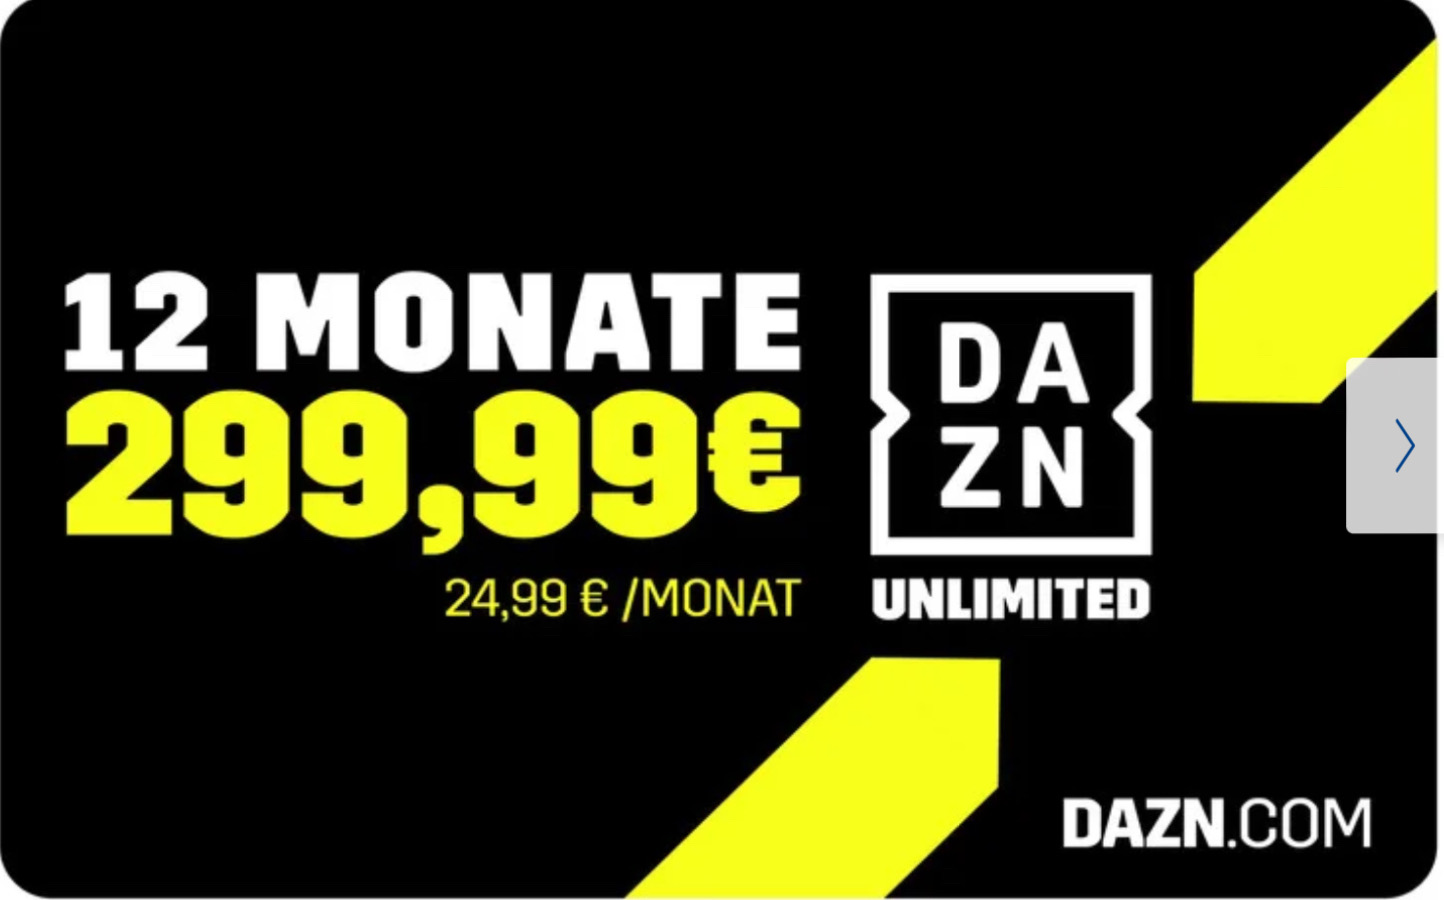 Unlimited 24,99€ DAZN LIDL: 12 monatlich Monate nur für